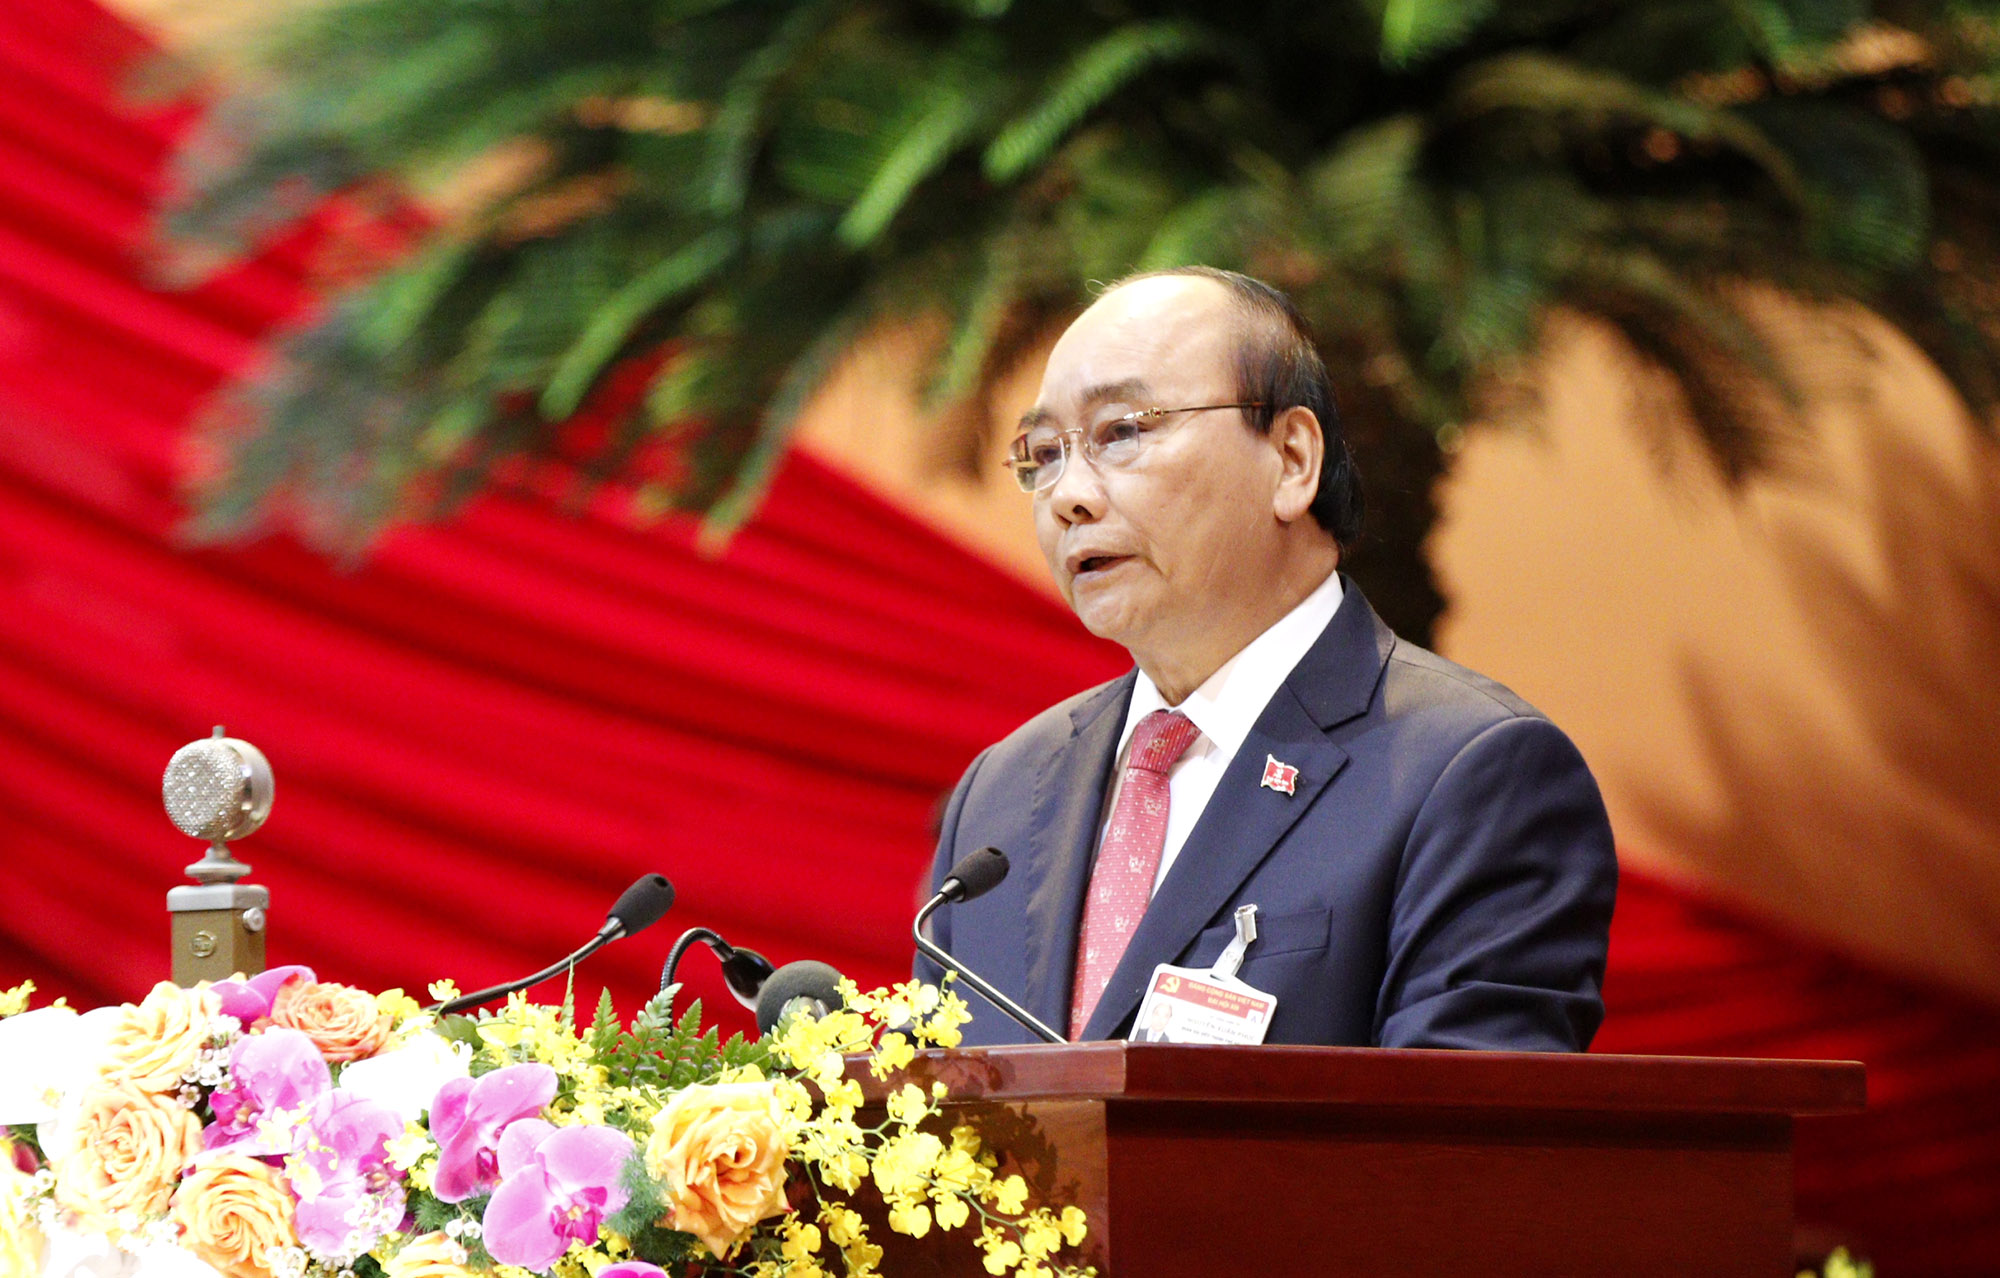 Đồng chí Nguyễn Xuân Phúc, Ủy viên Bộ Chính trị, Thủ tướng Chính phủ thay mặt Đoàn Chủ tịch đọc Diễn văn khai mạc Đại hội